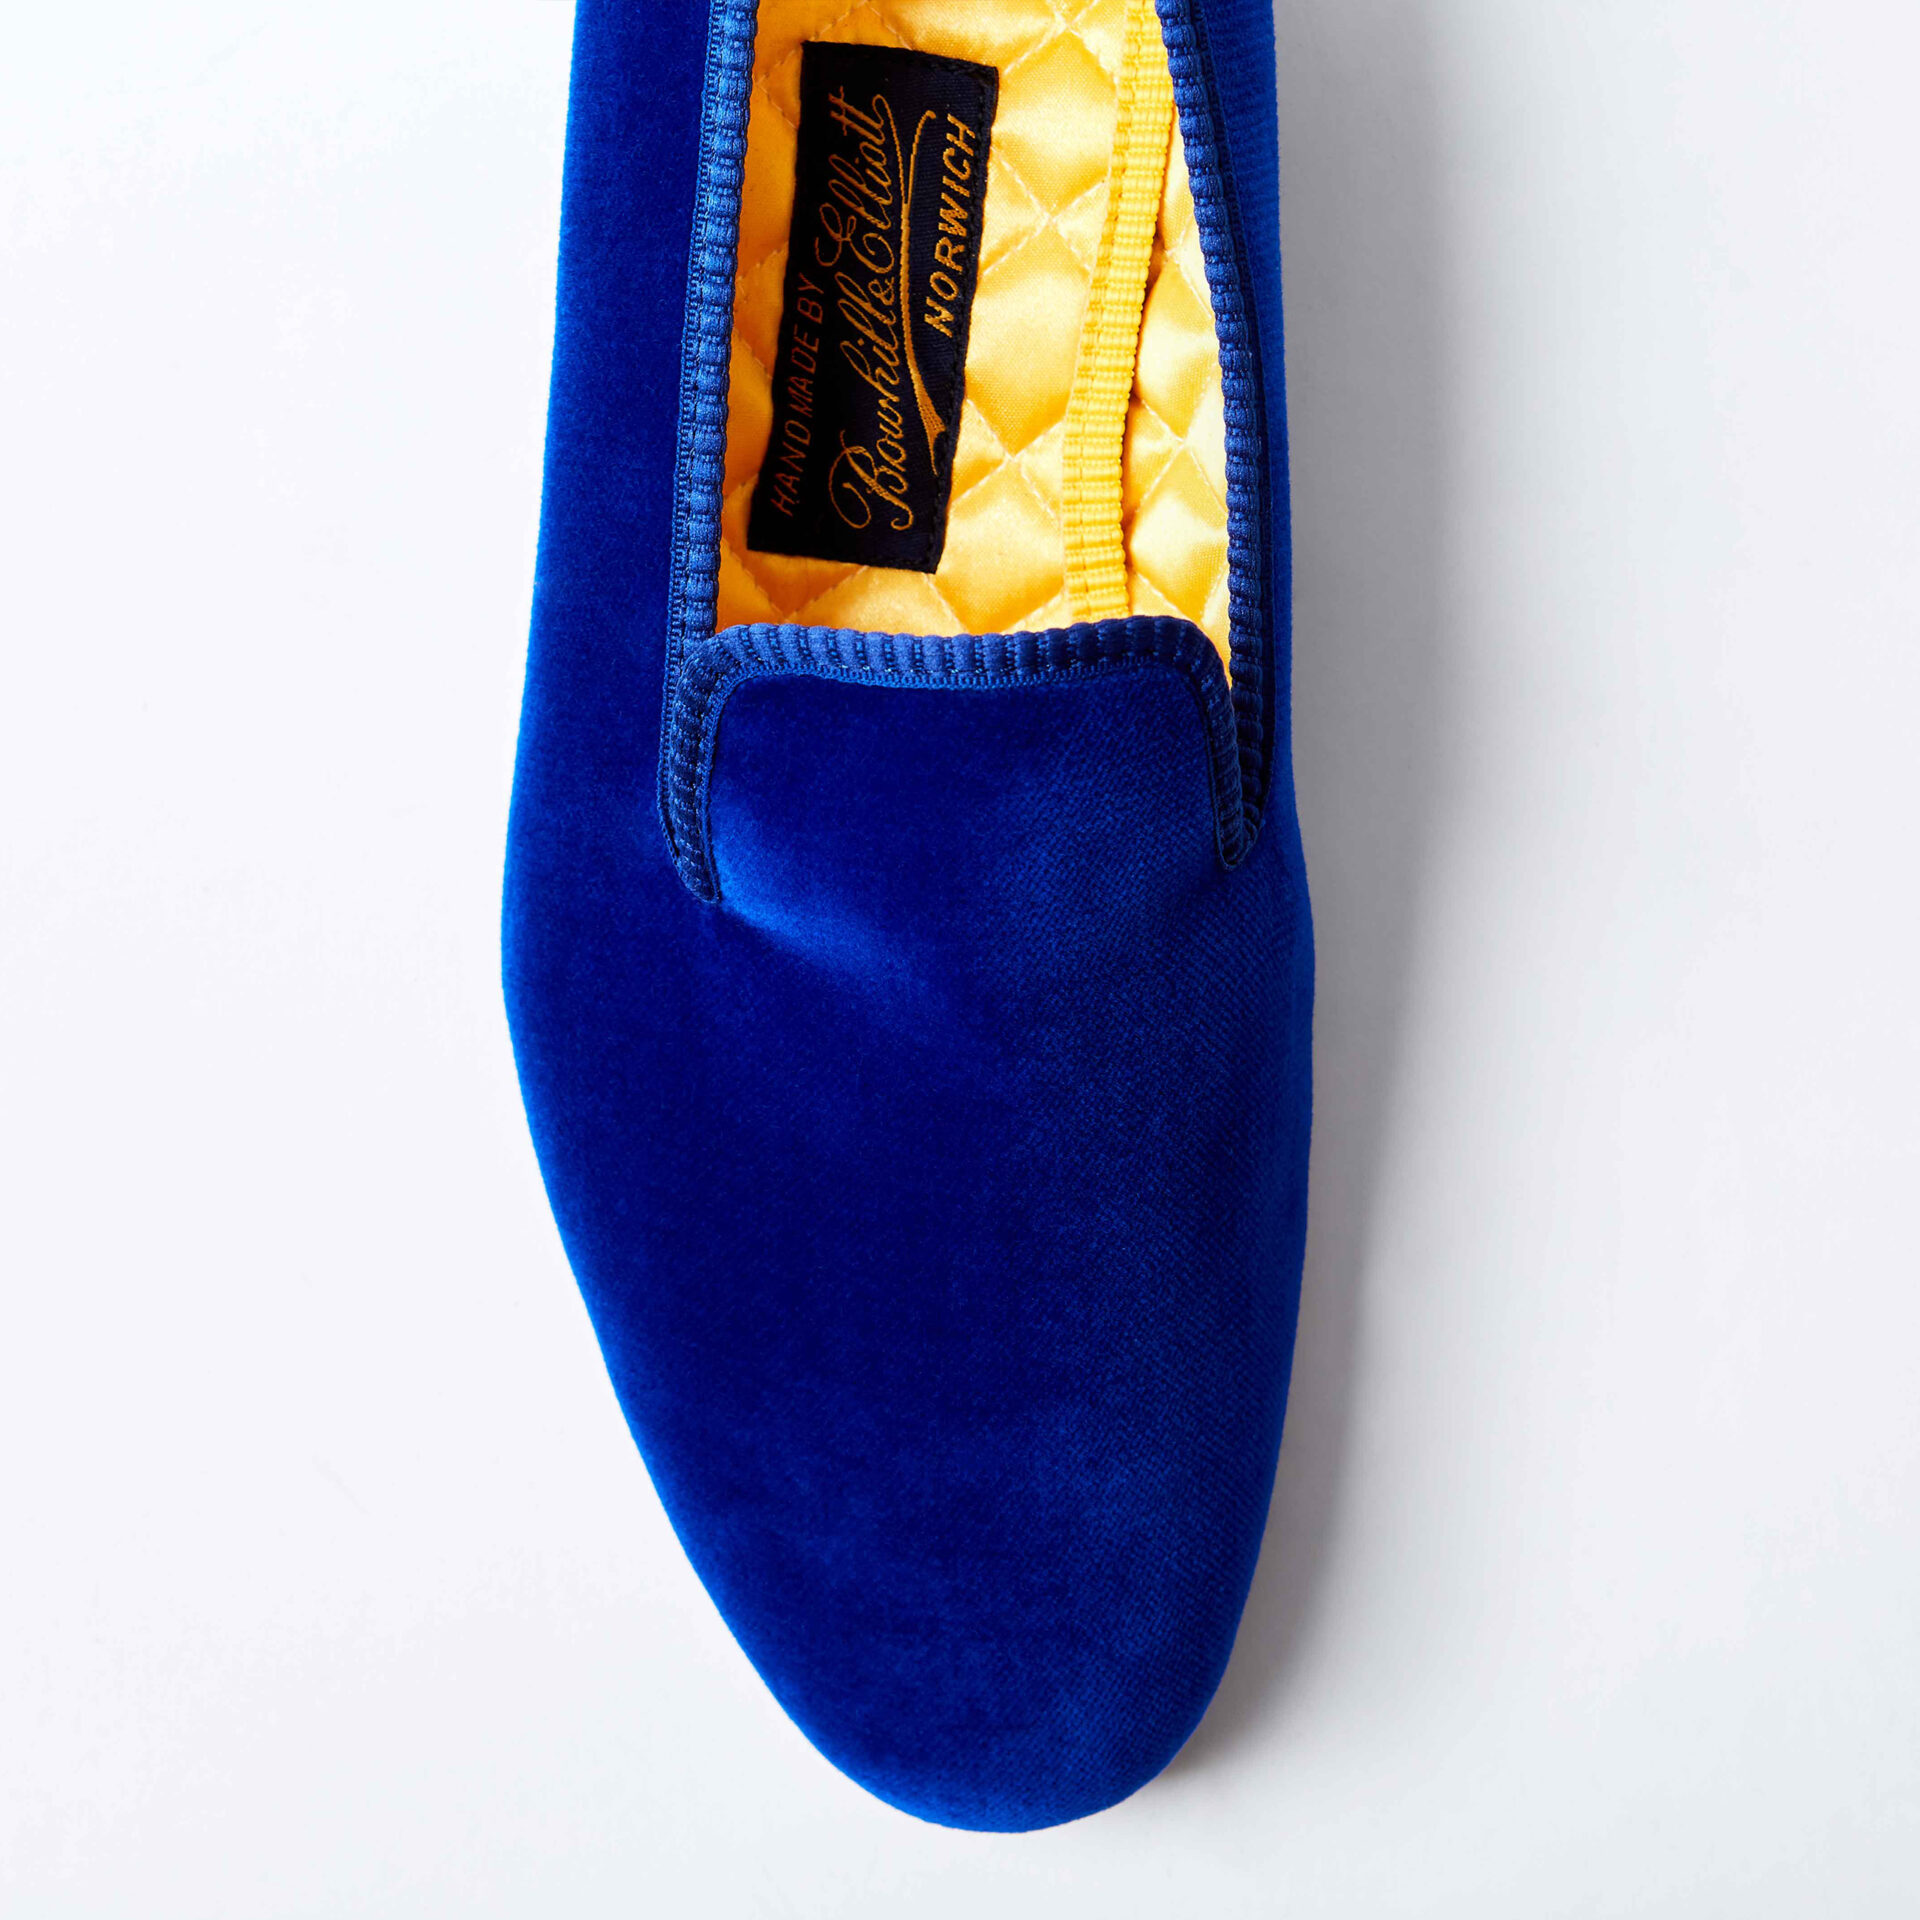 royal blue velvet albert slippers